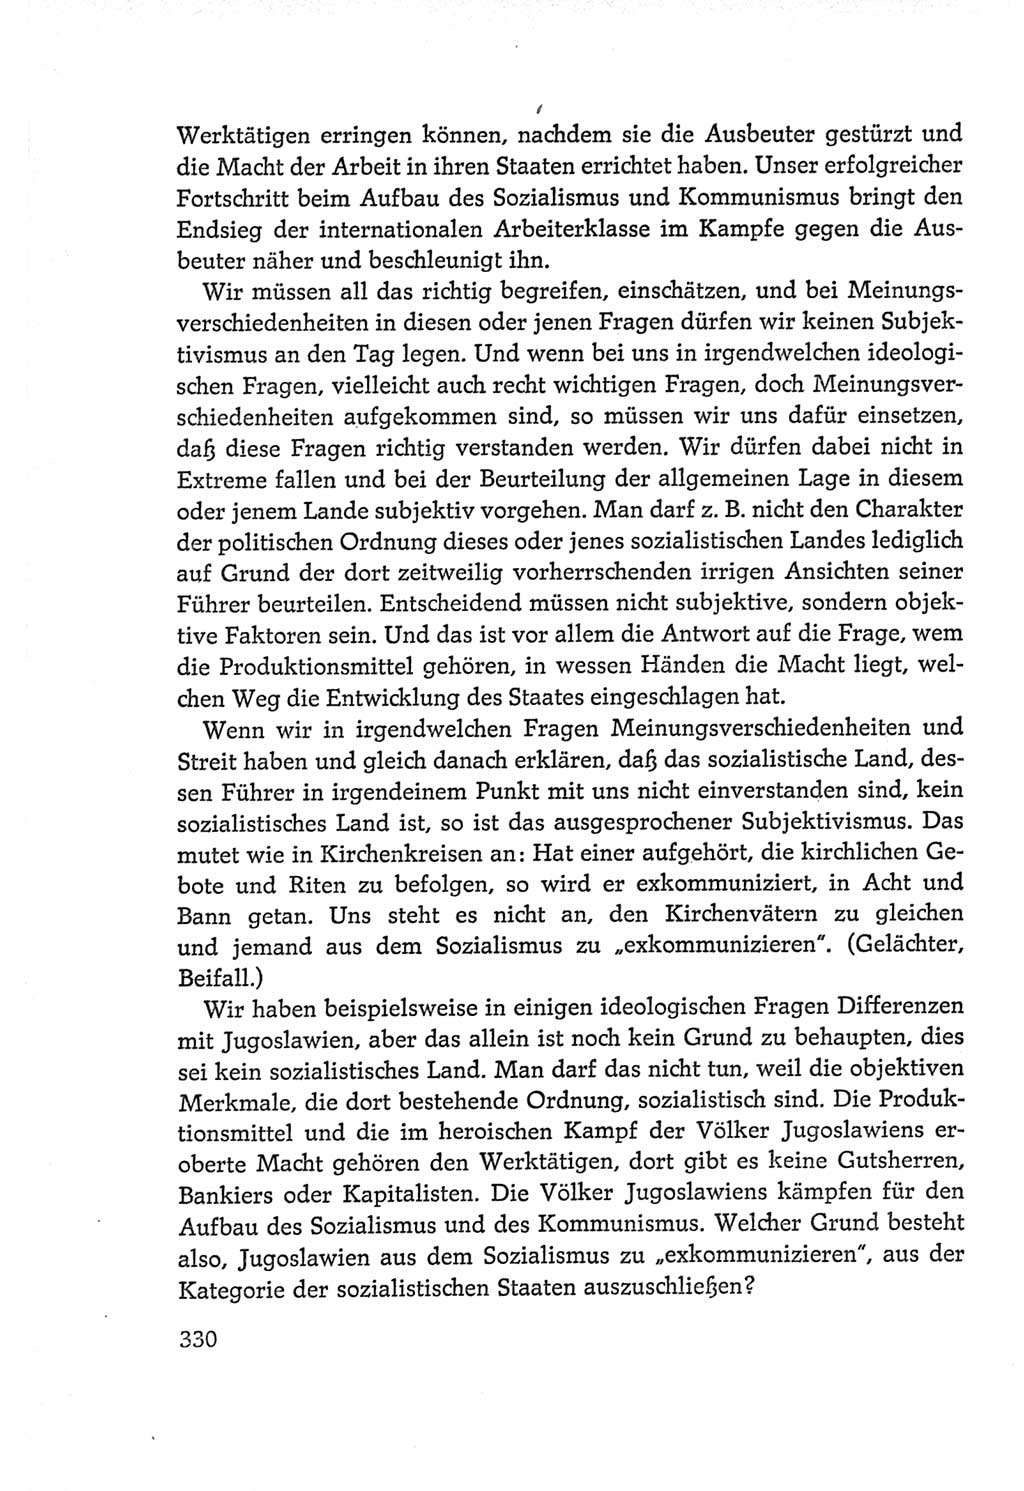 Protokoll der Verhandlungen des Ⅵ. Parteitages der Sozialistischen Einheitspartei Deutschlands (SED) [Deutsche Demokratische Republik (DDR)] 1963, Band Ⅰ, Seite 330 (Prot. Verh. Ⅵ. PT SED DDR 1963, Bd. Ⅰ, S. 330)